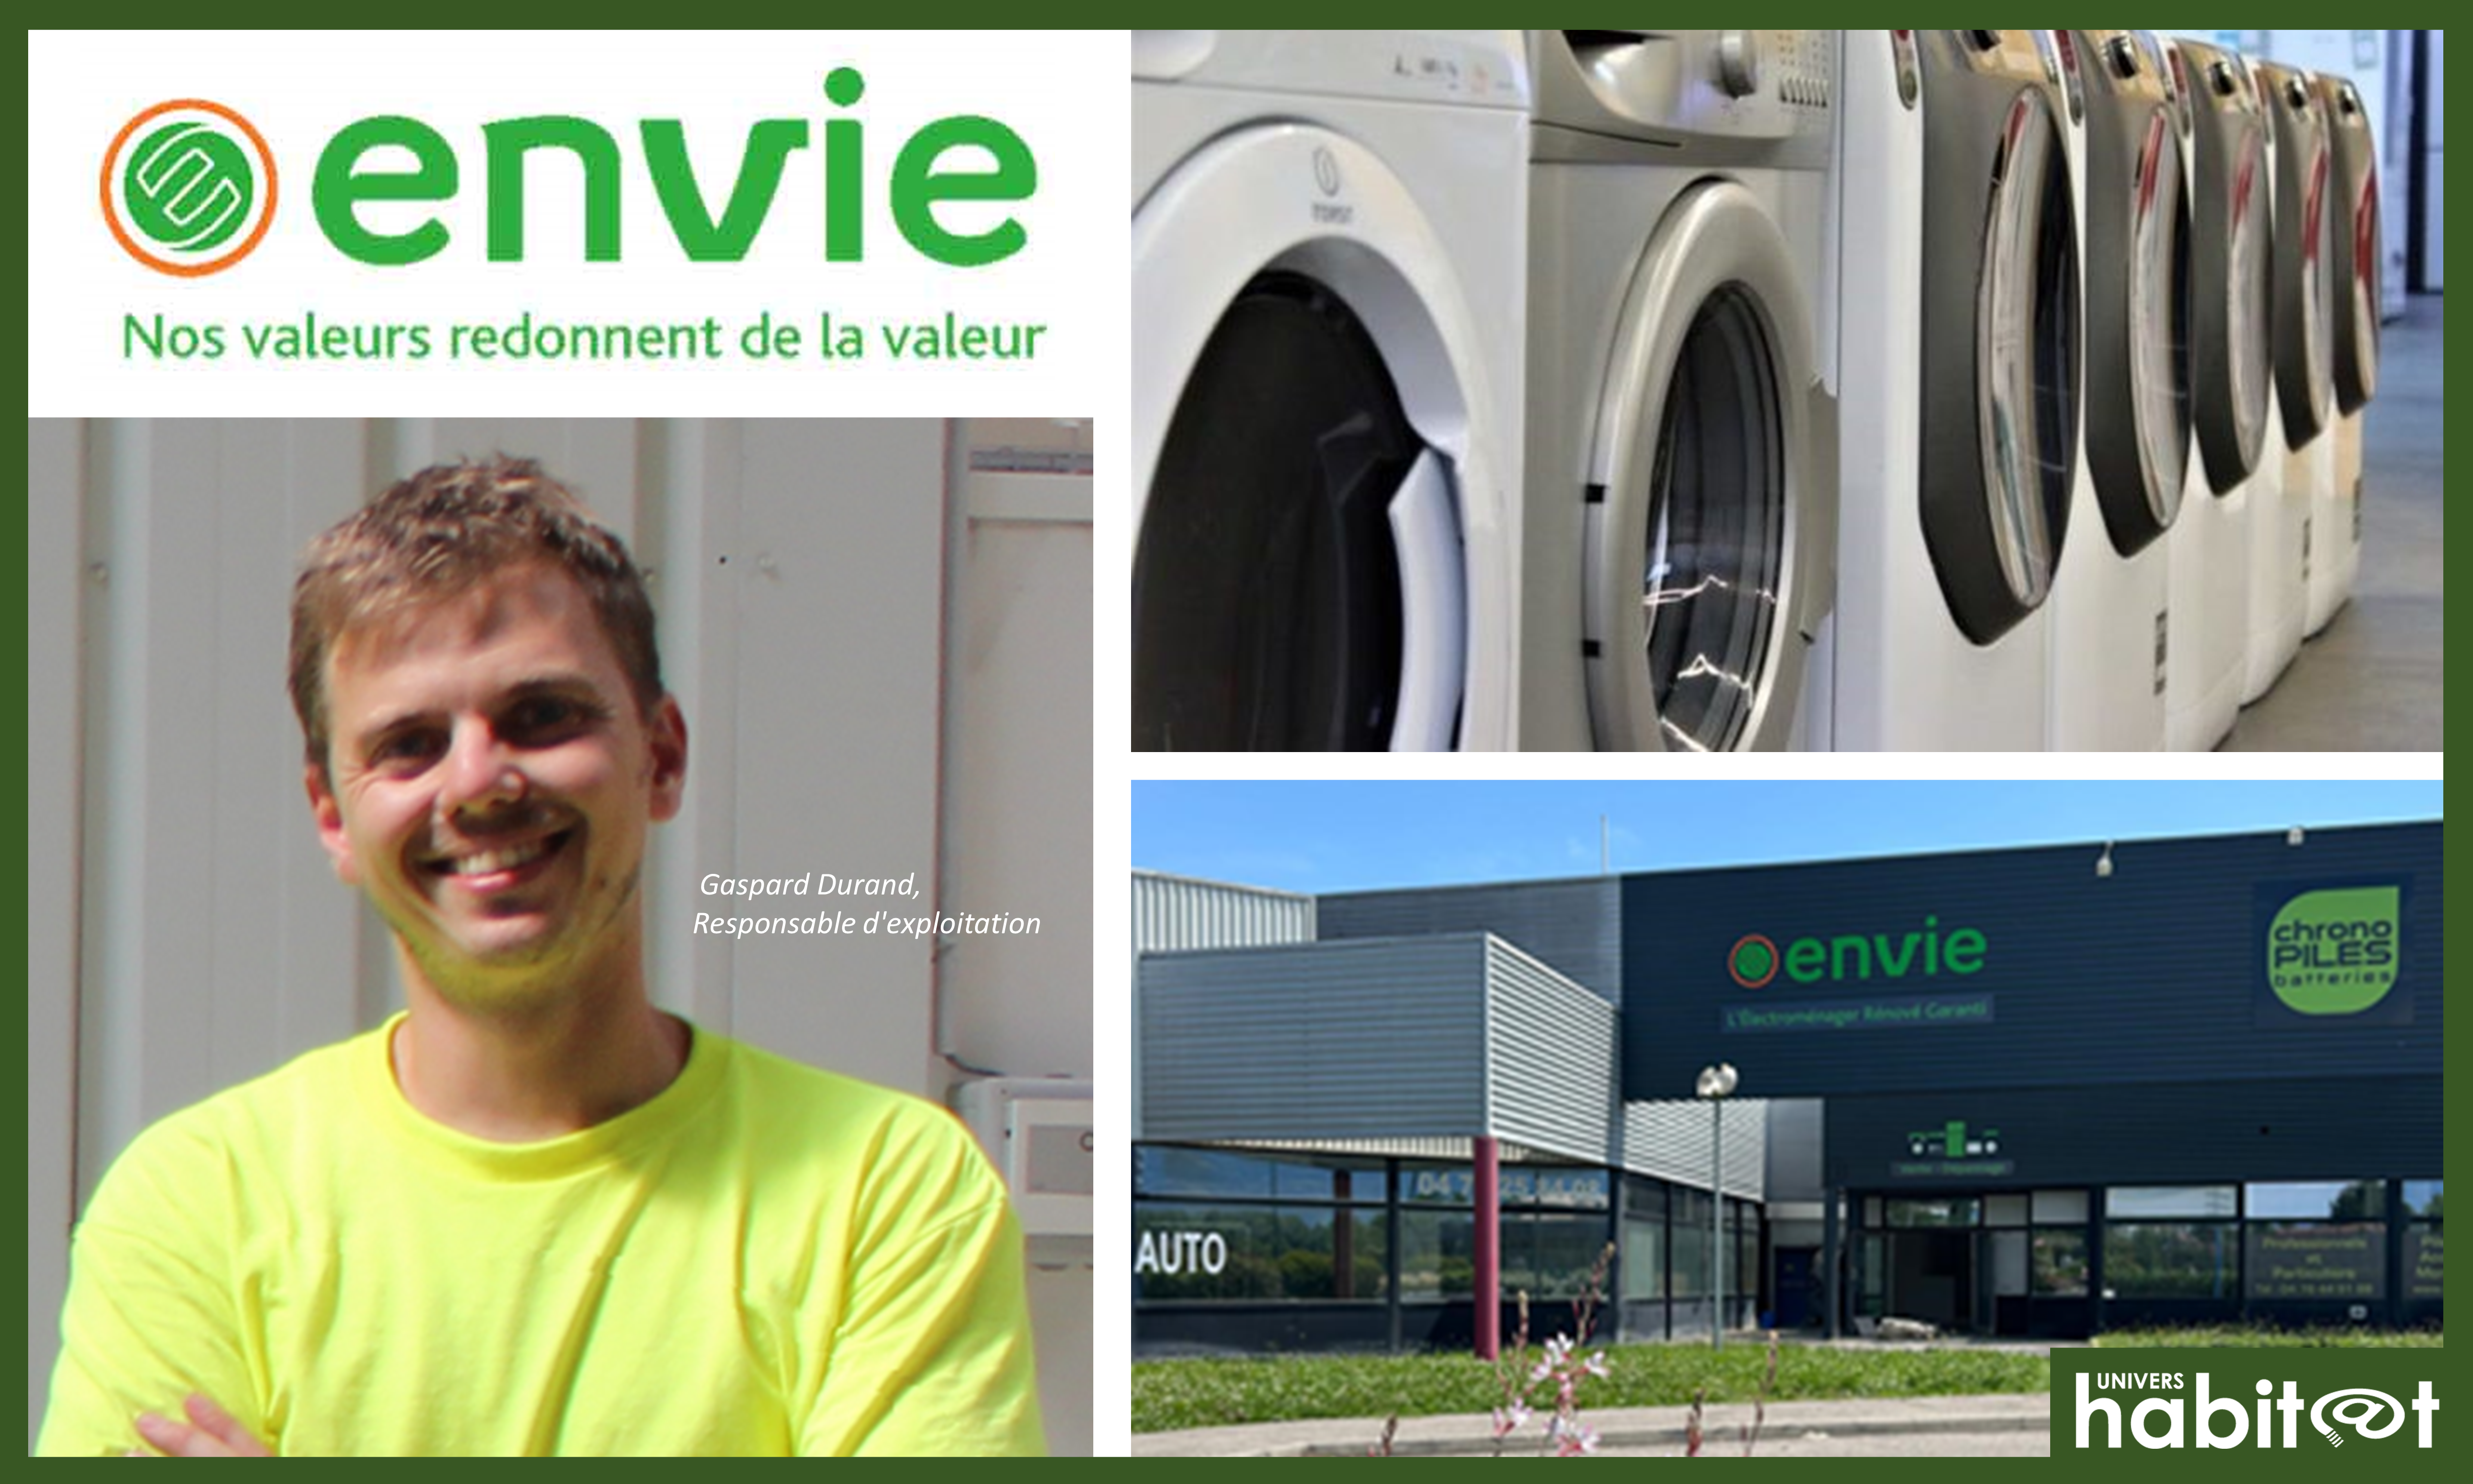 Le réseau Envie ouvre un nouveau point de vente à Saint-Martin-d’Hères et participe à la création de 50 emplois